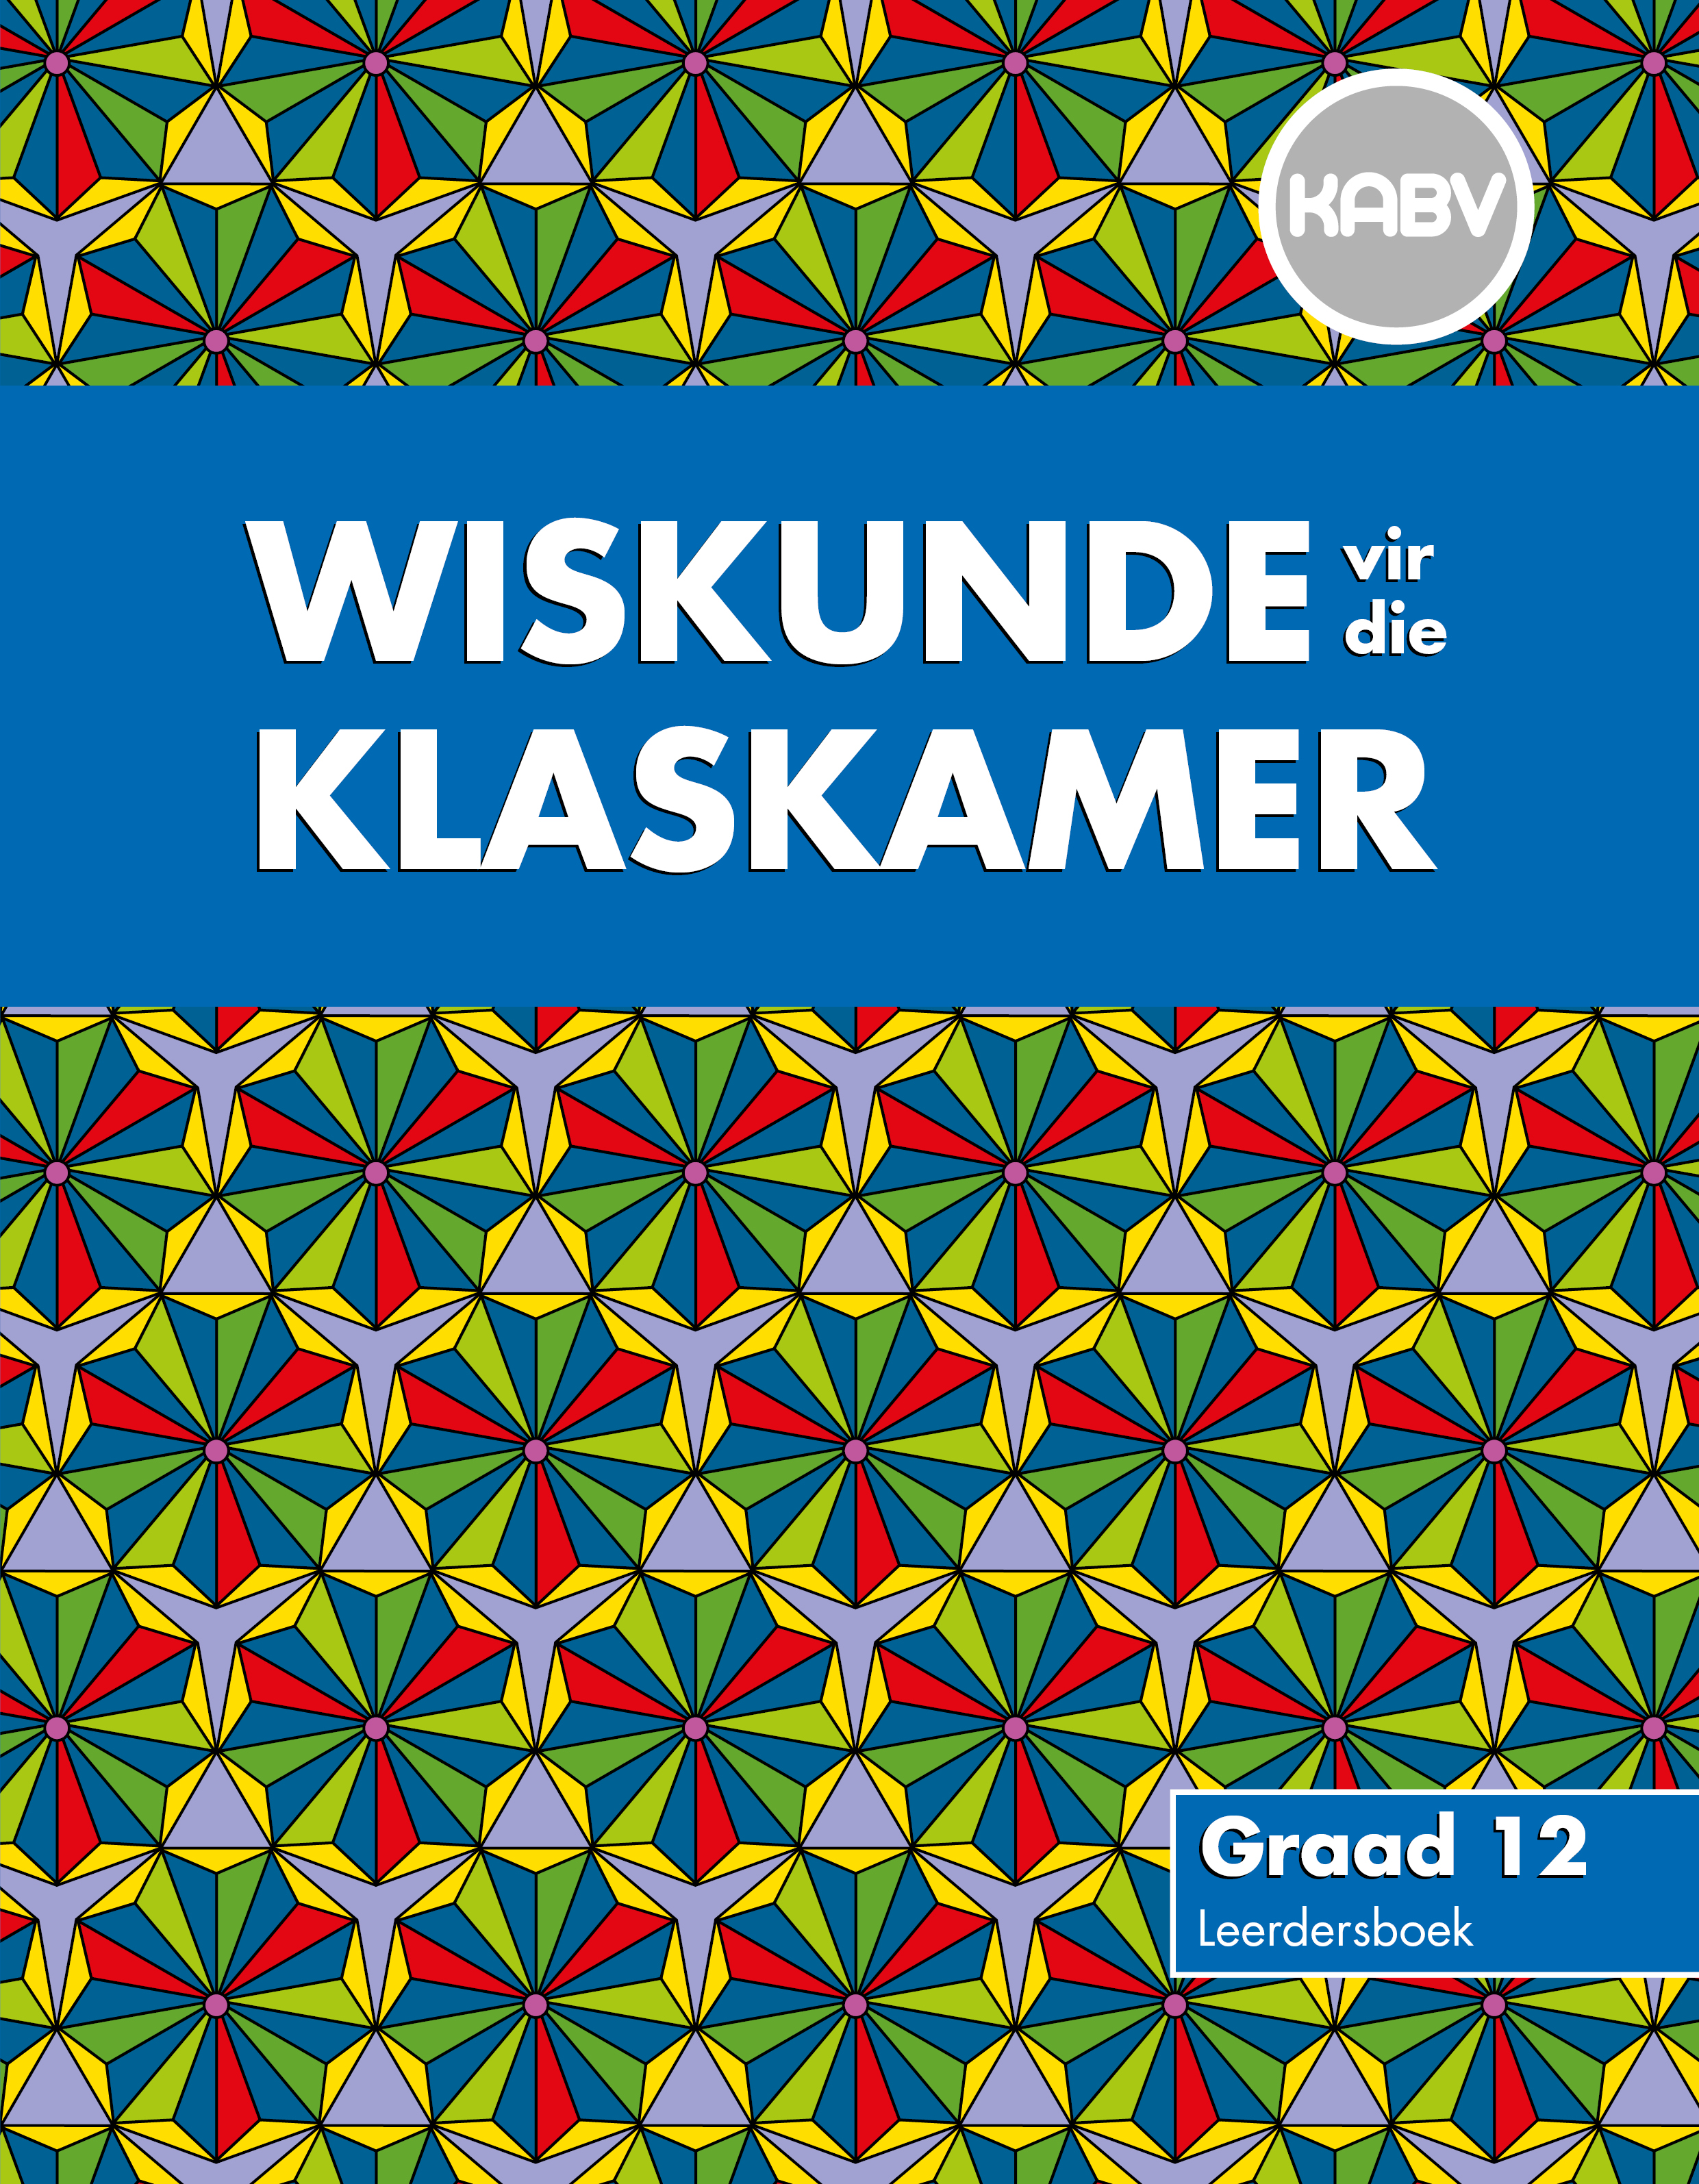 Picture of Wiskunde vir die Klaskamer : Grade 12 : Leerdersboek